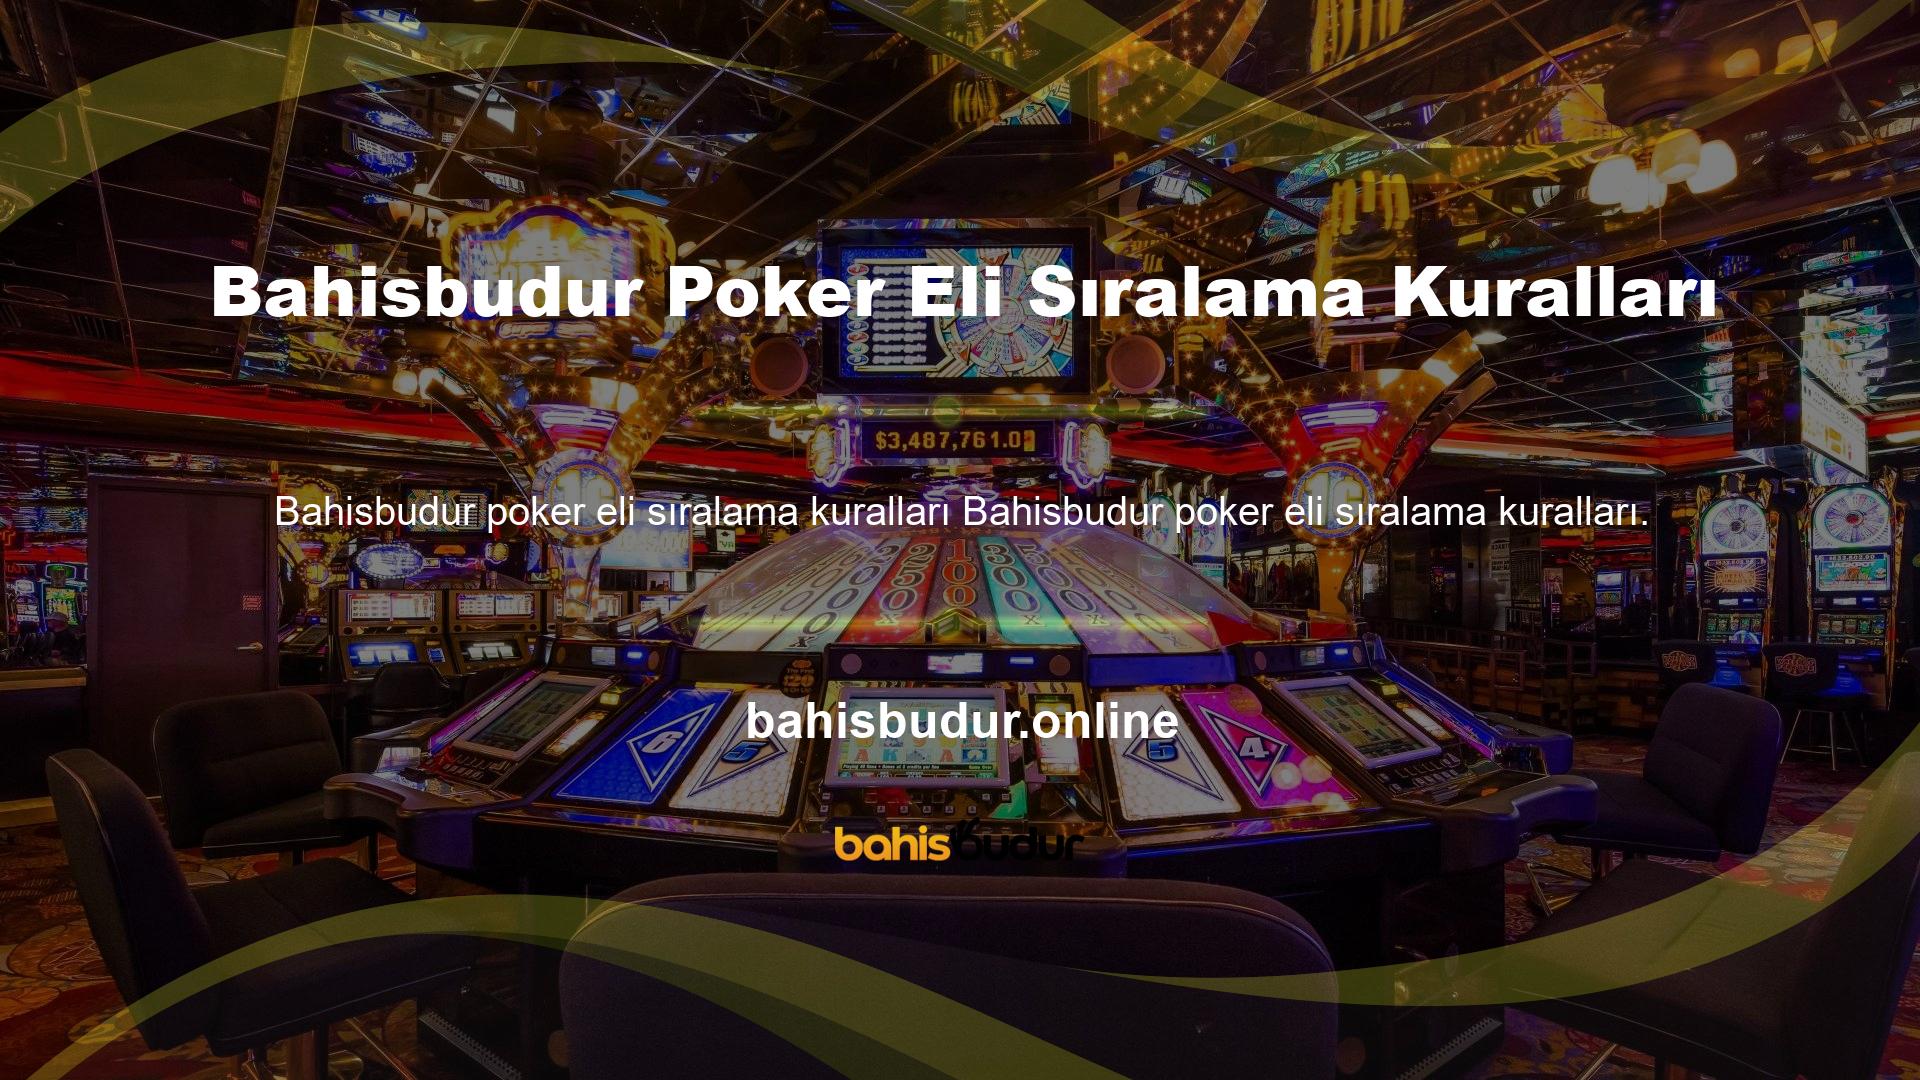 Herhangi bir şans oyununda Bahisbudur poker ellerinin sıralaması gibi, pokerin de belirli kuralları vardır